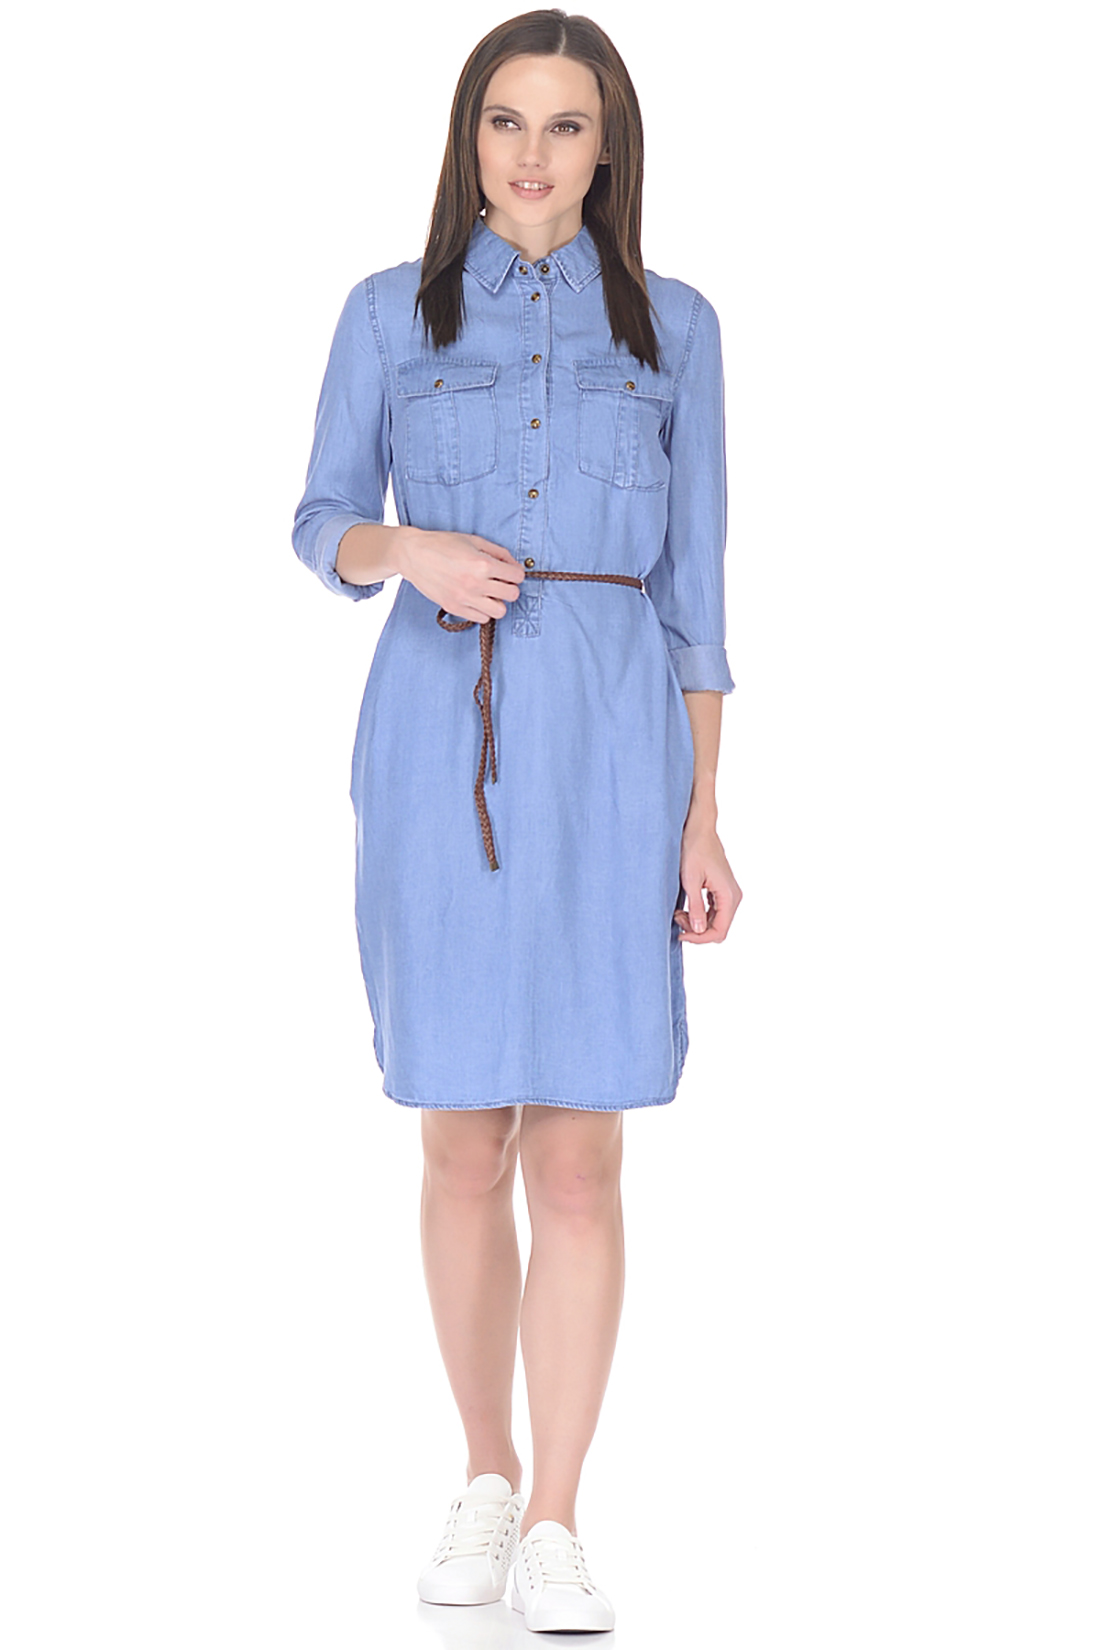 Платье-рубашка из денима (арт. baon B458109), размер L, цвет blue denim#голубой Платье-рубашка из денима (арт. baon B458109) - фото 1